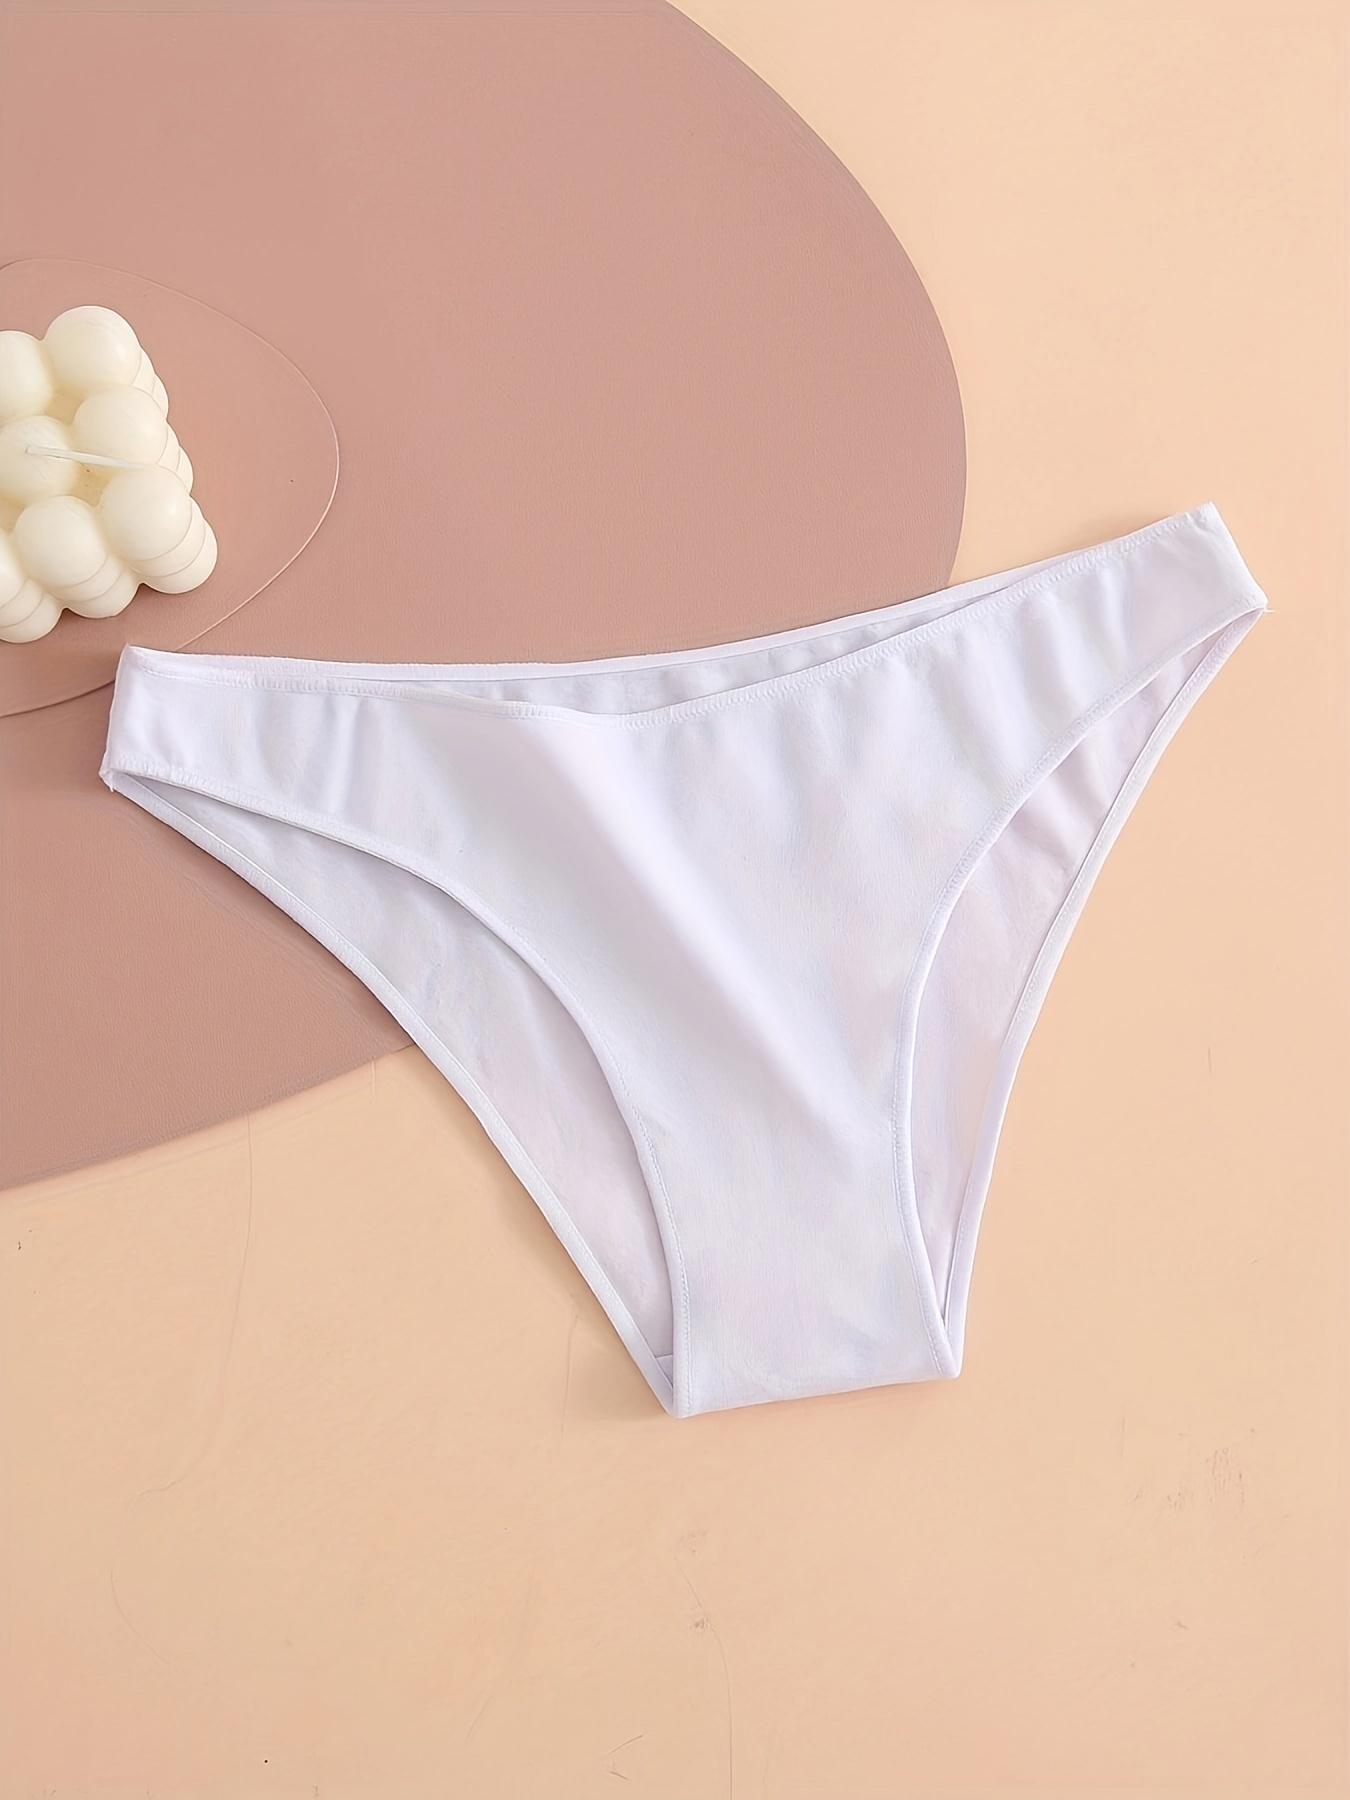 Buy Womens Underwear - Cotton Underwear for Women – Soft Breathable Panties  for Women – 95% Cotton 5% Elastane Women's Underwear, 7-pack Basic Mix,  Medium at